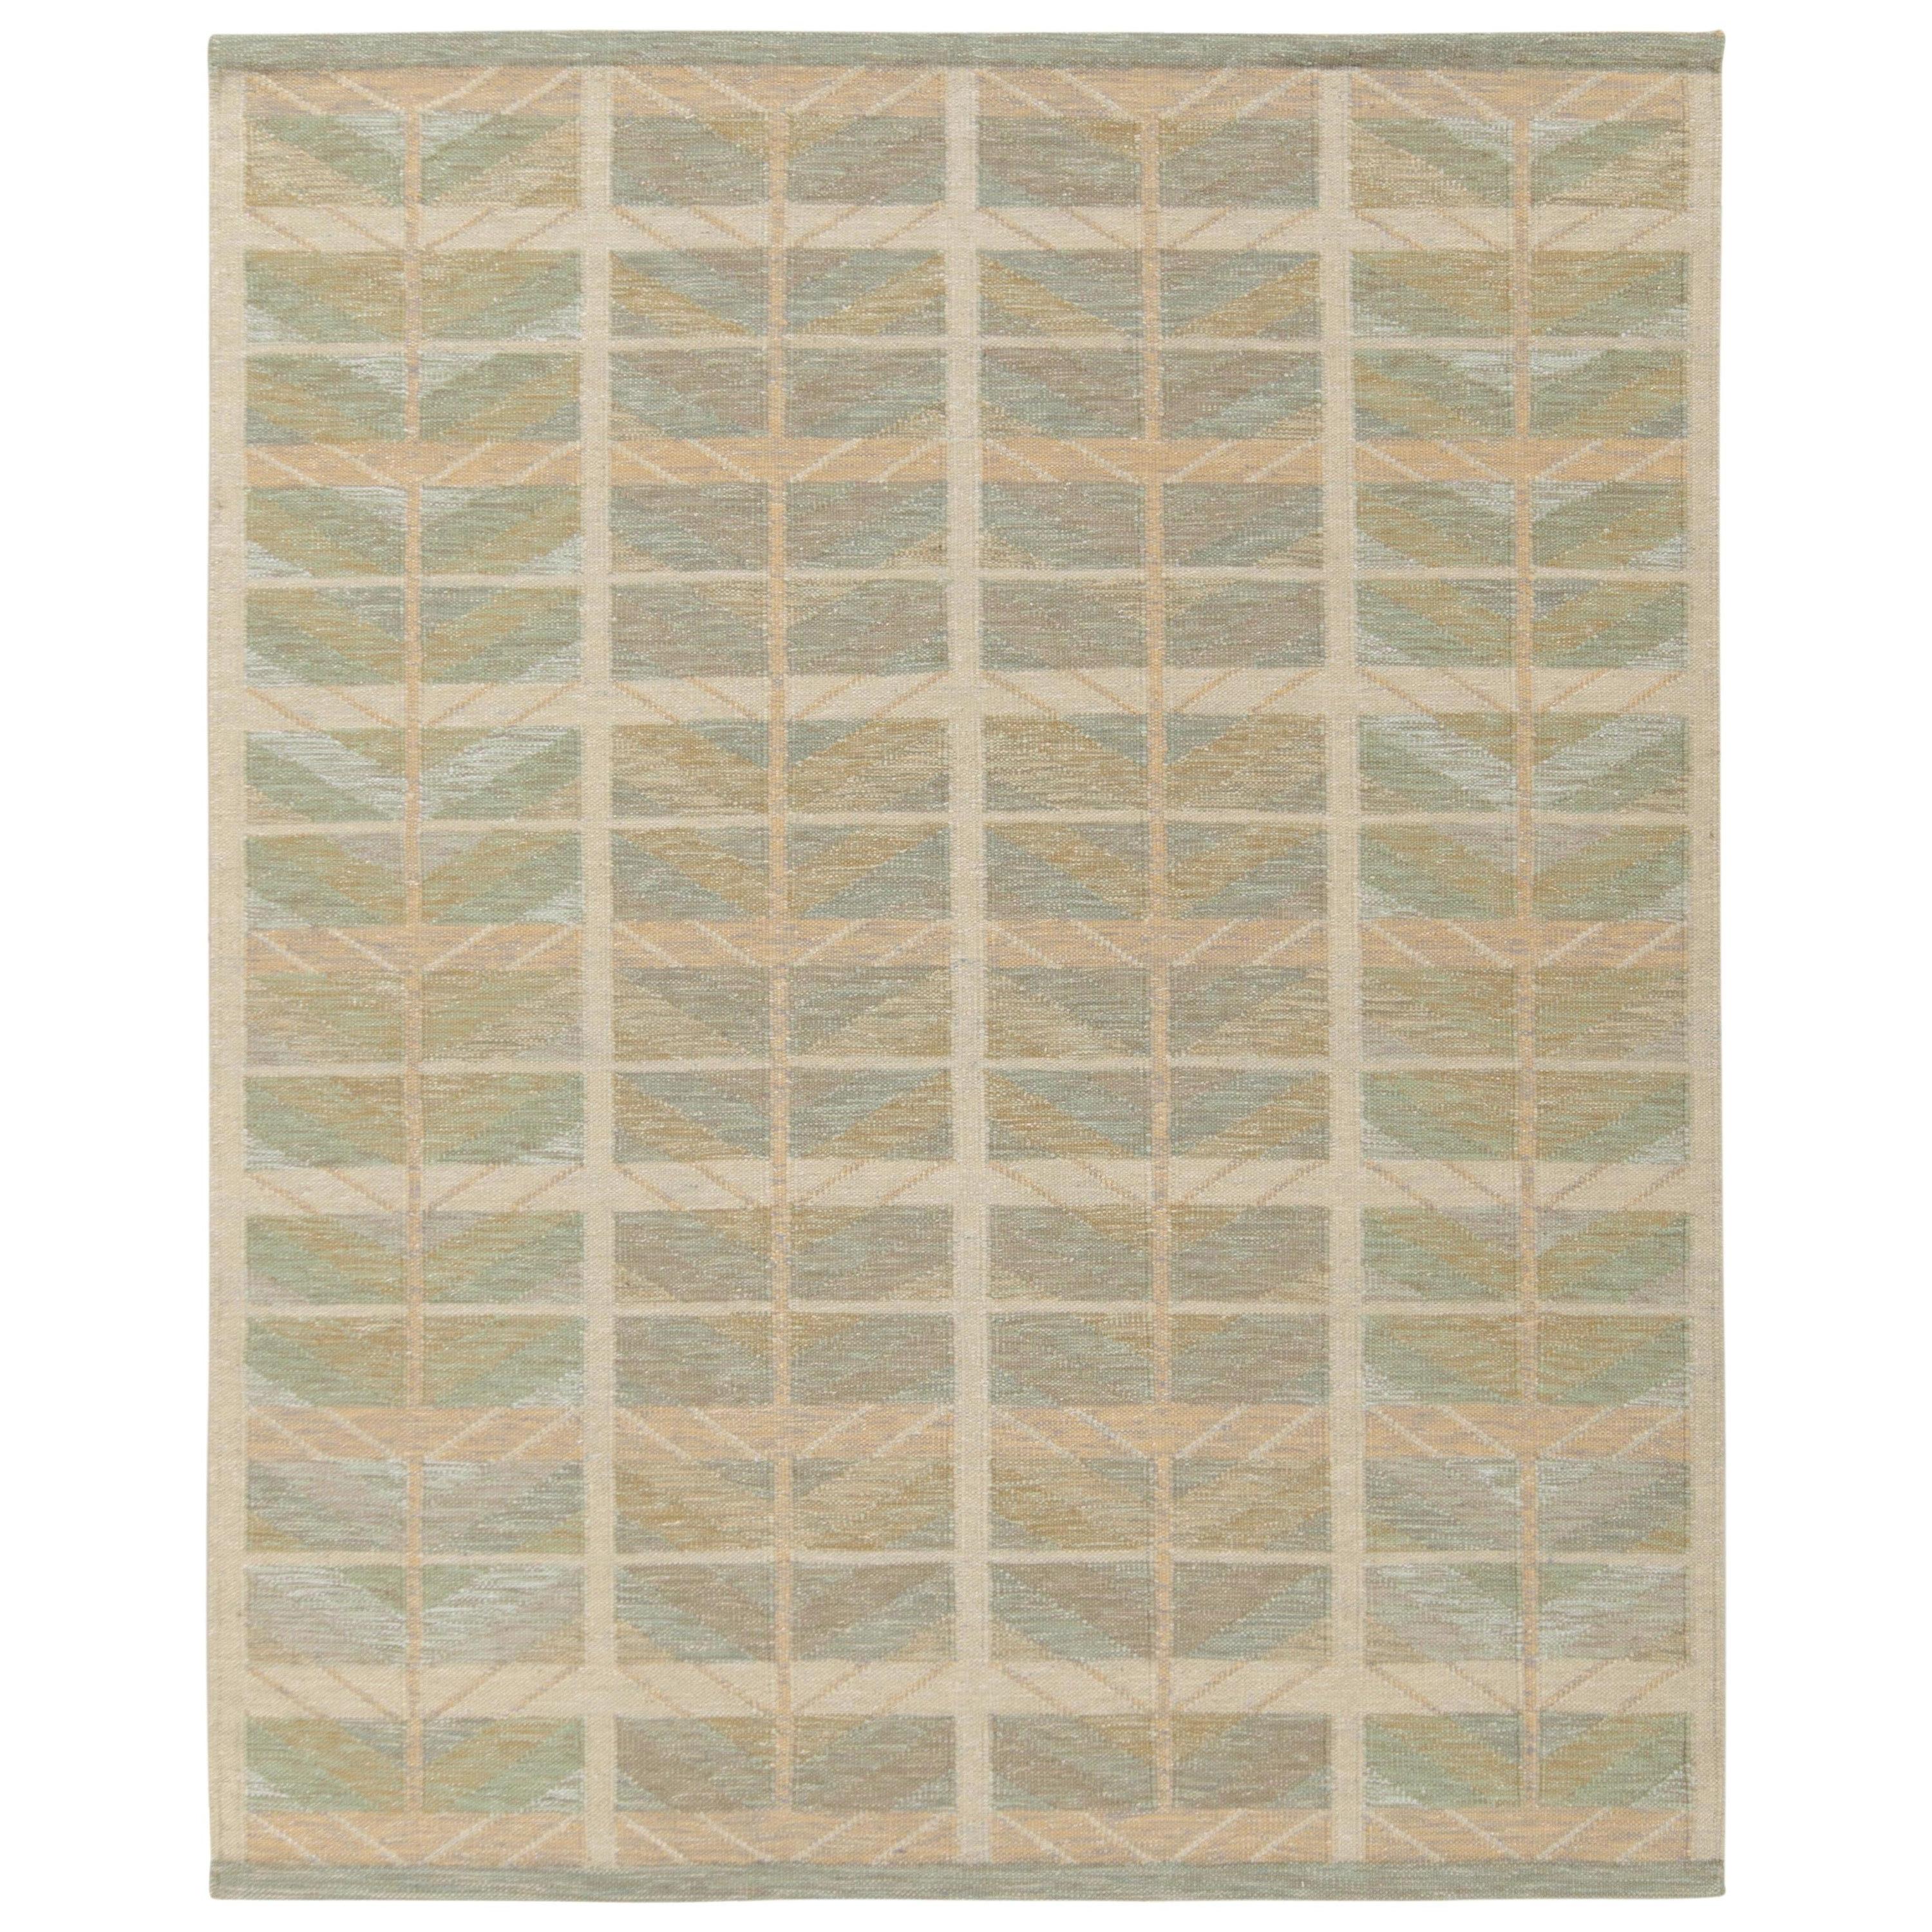 Teppich & Kelim im skandinavischen Stil, maßgefertigter Kelim in Beige, Grün und Blau